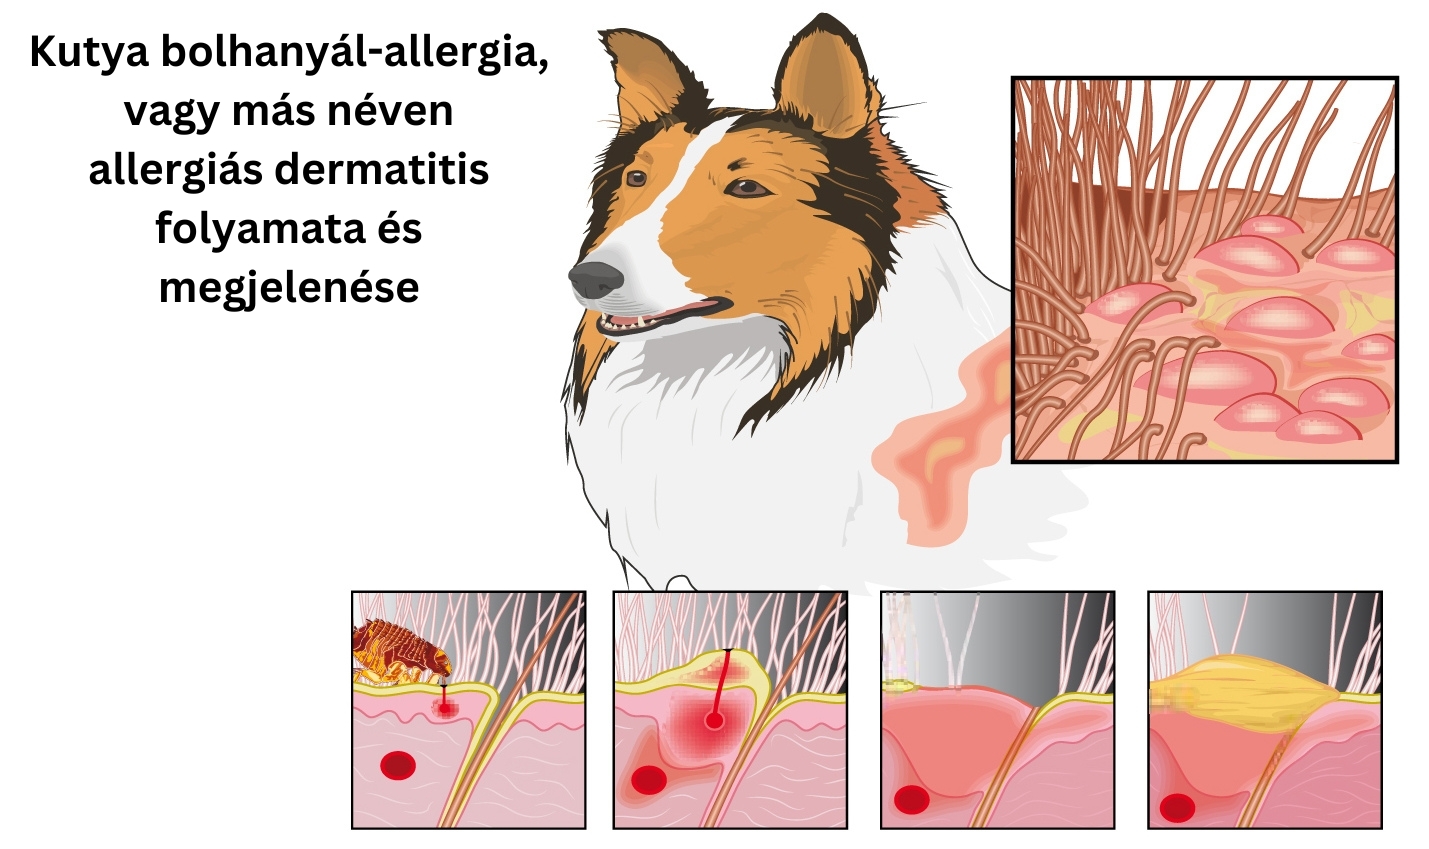 Kutya bolhanyál allergia, vagy más néven allergiás dermatitis